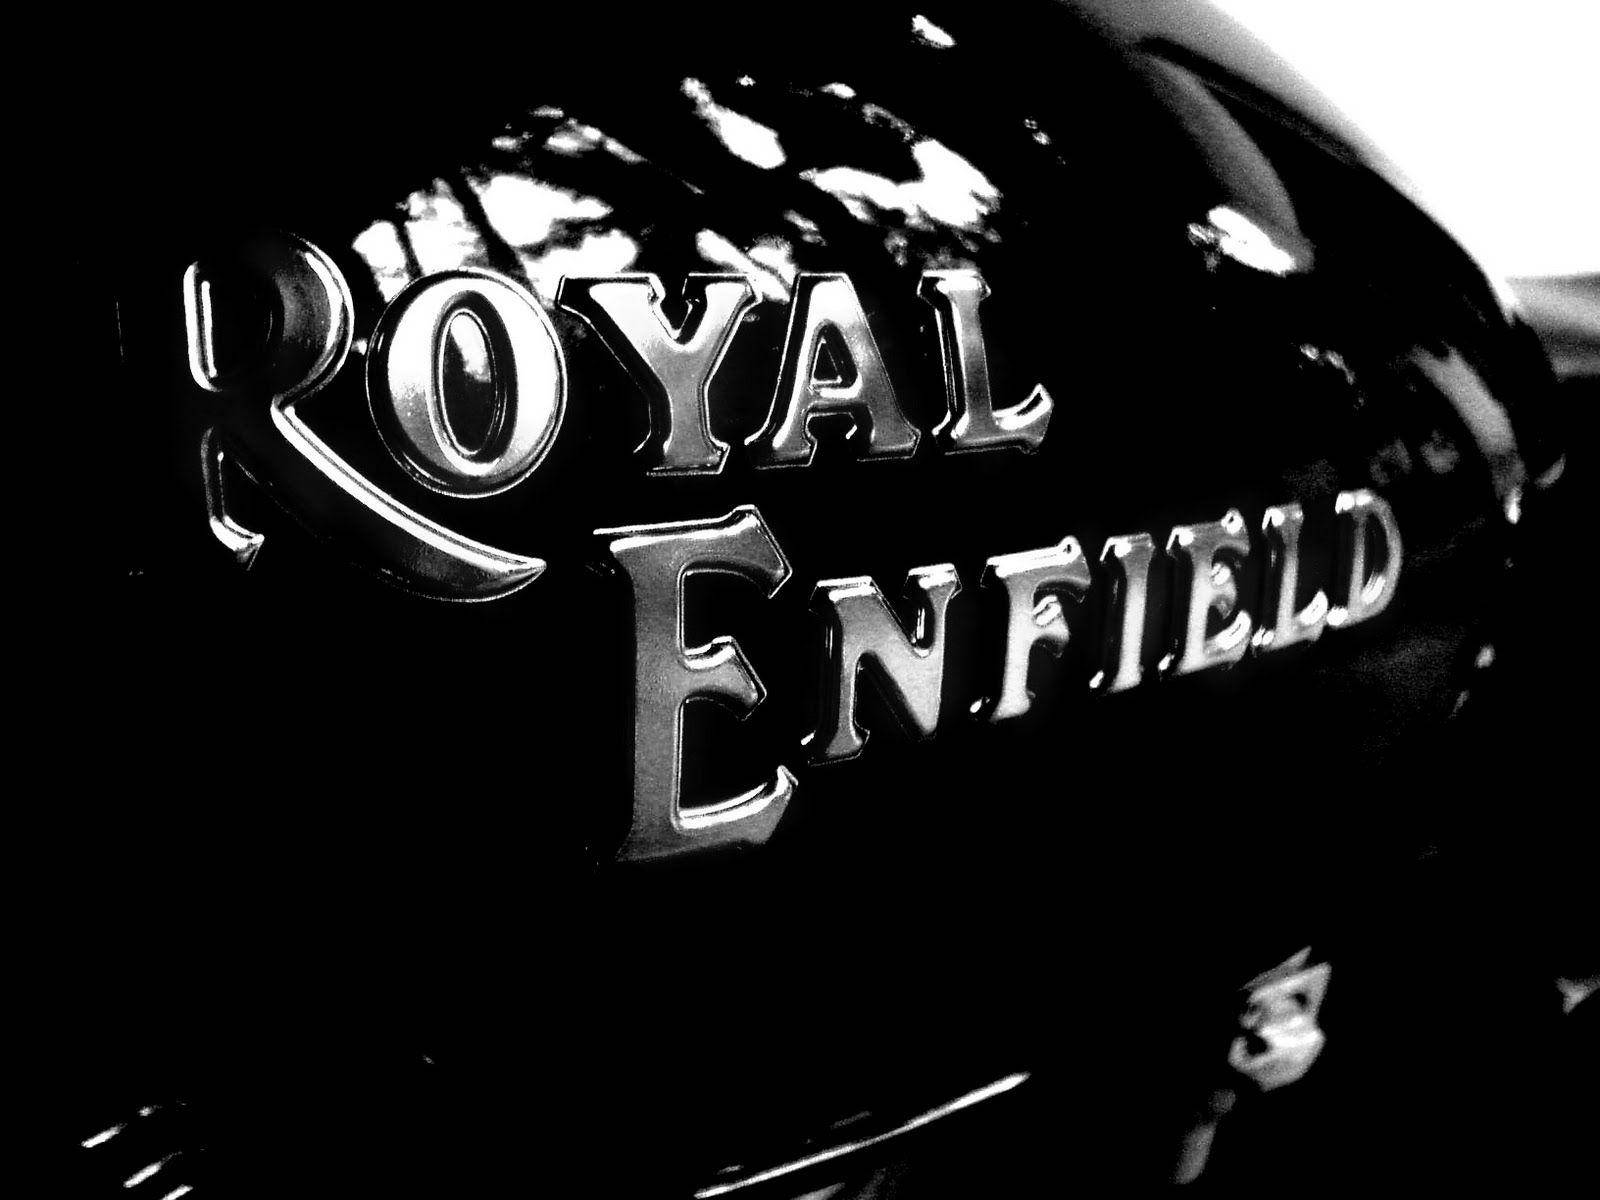 Free Royal Enfield Hd Wallpaper Downloads, [100+] Royal Enfield Hd  Wallpapers for FREE 